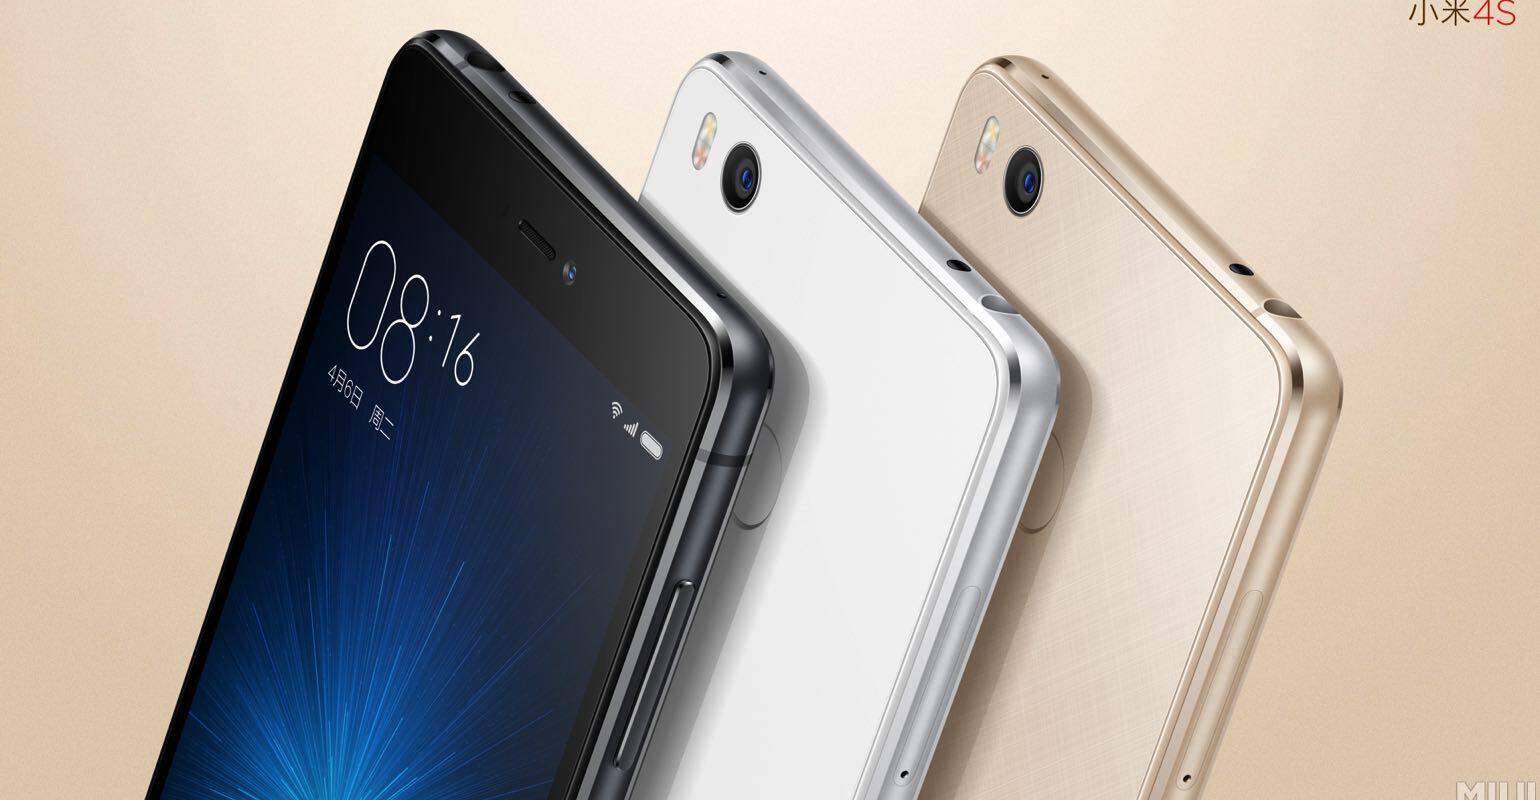 Xiaomi aanbiedingen bij Gearbest wegens introductie Xiaomi Mi 5 en Mi 4s